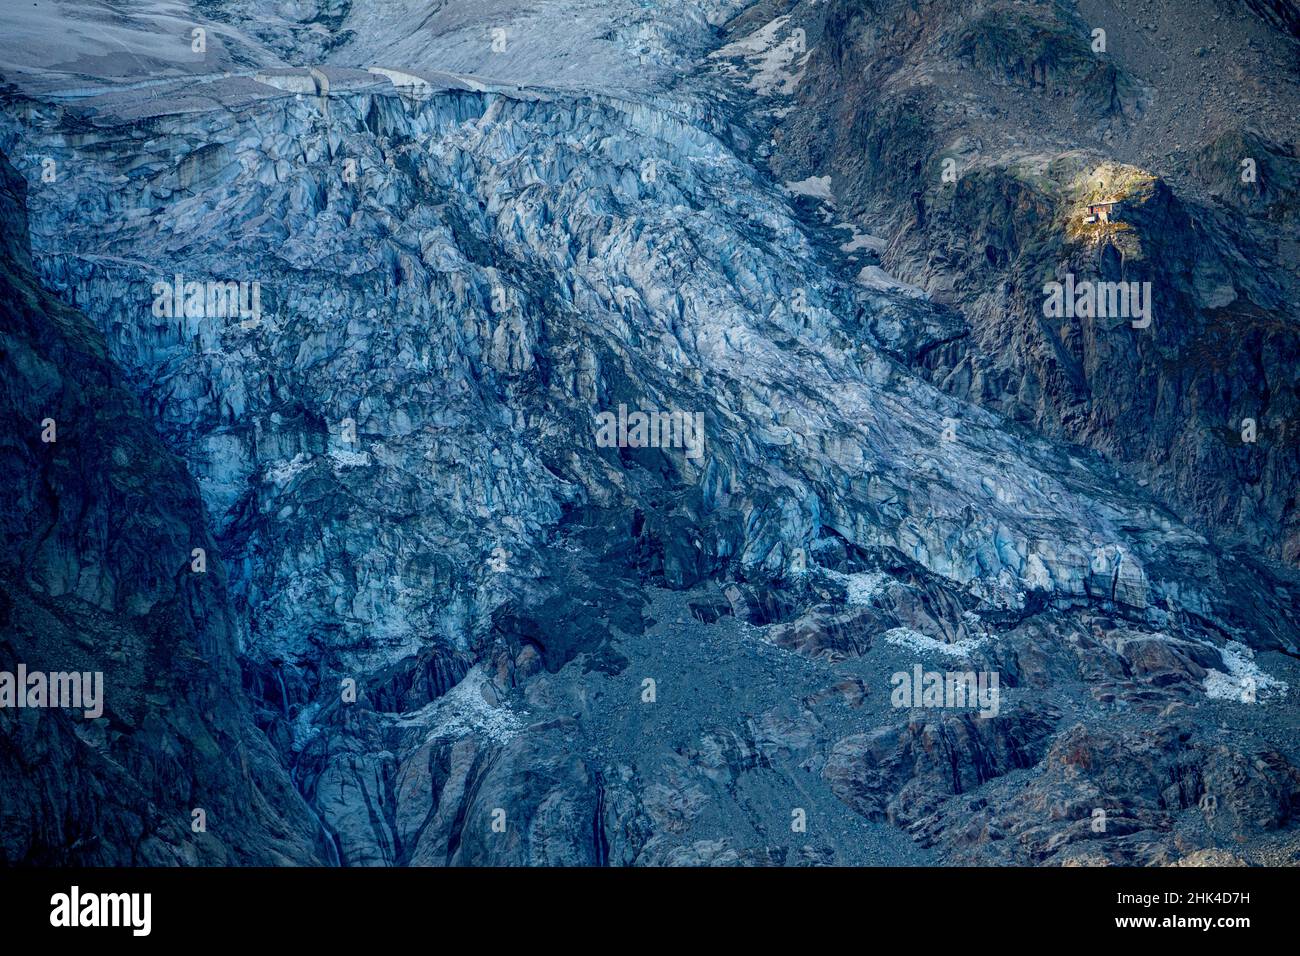 Experten warnten im Jahr 2019, dass ein Abschnitt des Planpincieux-Gletschers auf dem ikonischen Mont Blanc in Gefahr sei, einzustürzen. Der abgebildete Abschnitt zeigt, wie der Albedo-Effekt durch Schadstoffe auf der Oberfläche des Gletschers beeinträchtigt wird. Normalerweise wird ein Gletscher während der meisten Wintermonate von weißem Schnee bedeckt sein, aber der Klimawandel verkürzt die Zeit, die der frische Schnee im Jahr über den Gletscher ziehen kann, drastisch. Die dunklere Oberfläche akkellert das Schmelzen des Gletschers. Stockfoto